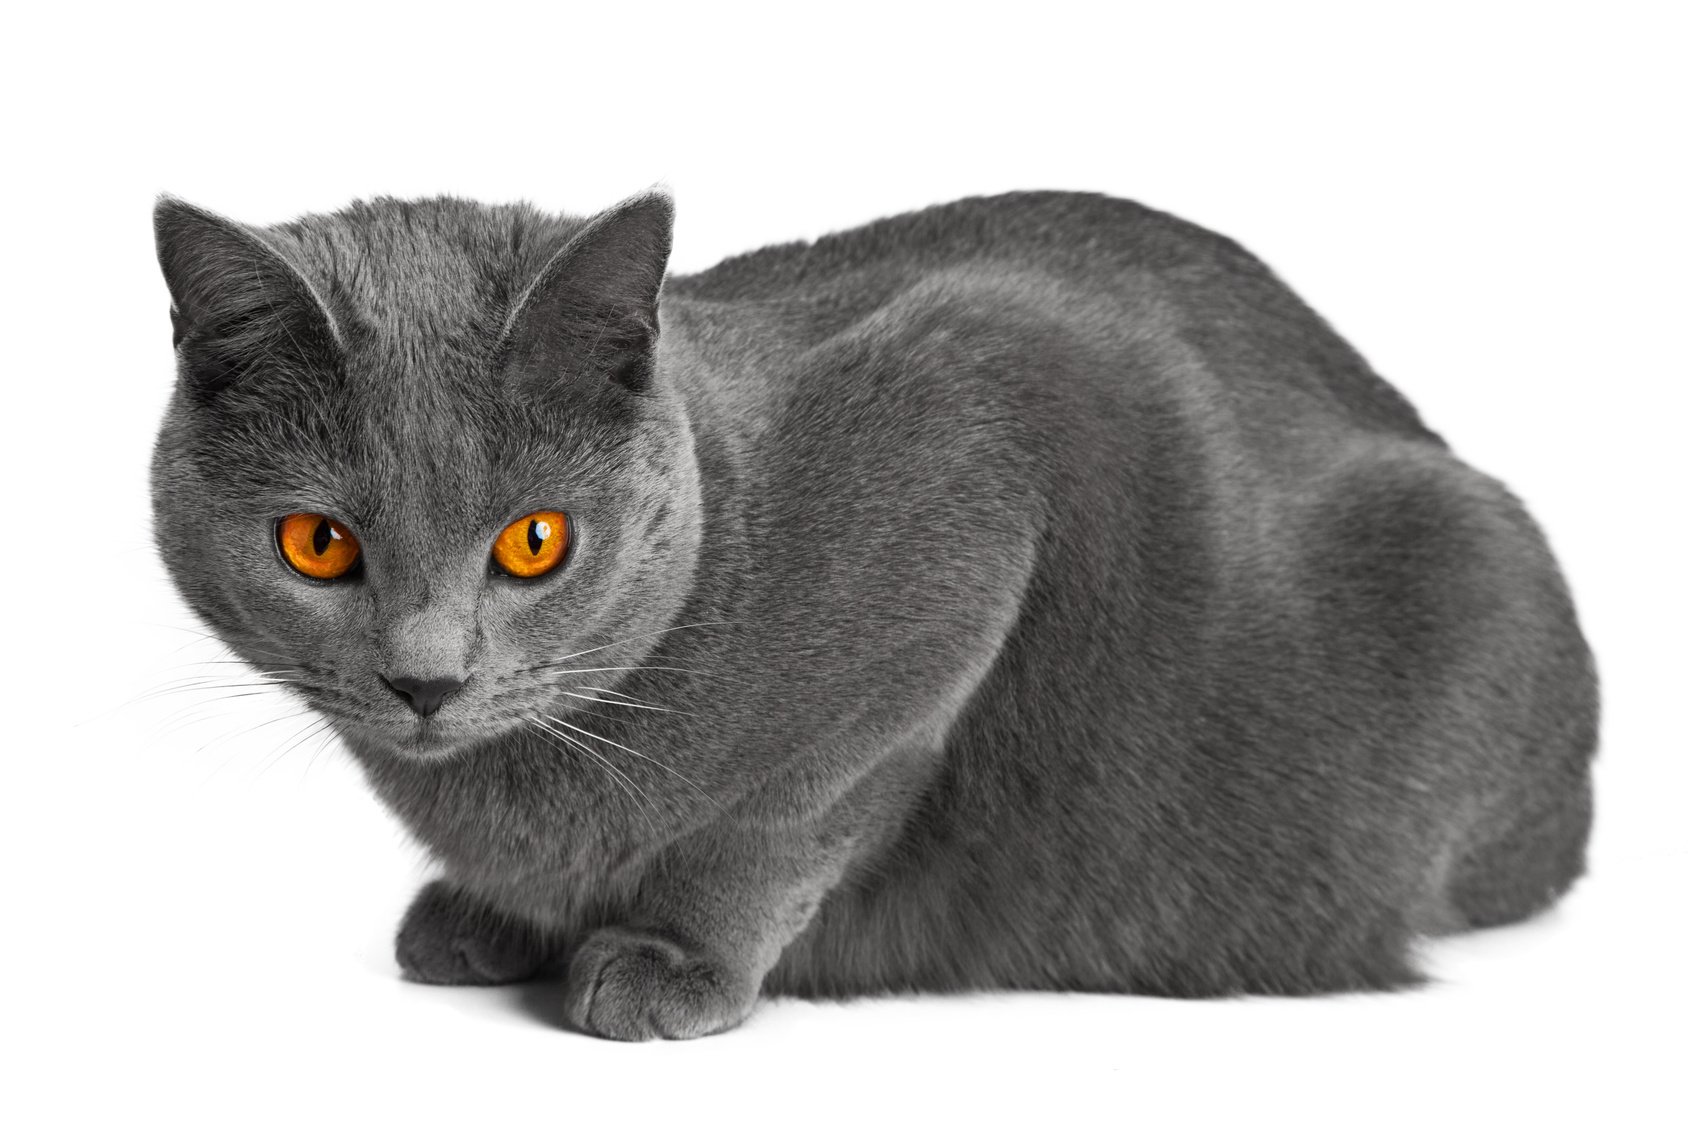 Рассмотрите фотографию кошки породы британская. Картезианская кошка шартрез. Шартрез порода кошек. Французская порода кошек шартрез. Картезианская кошка голубая.